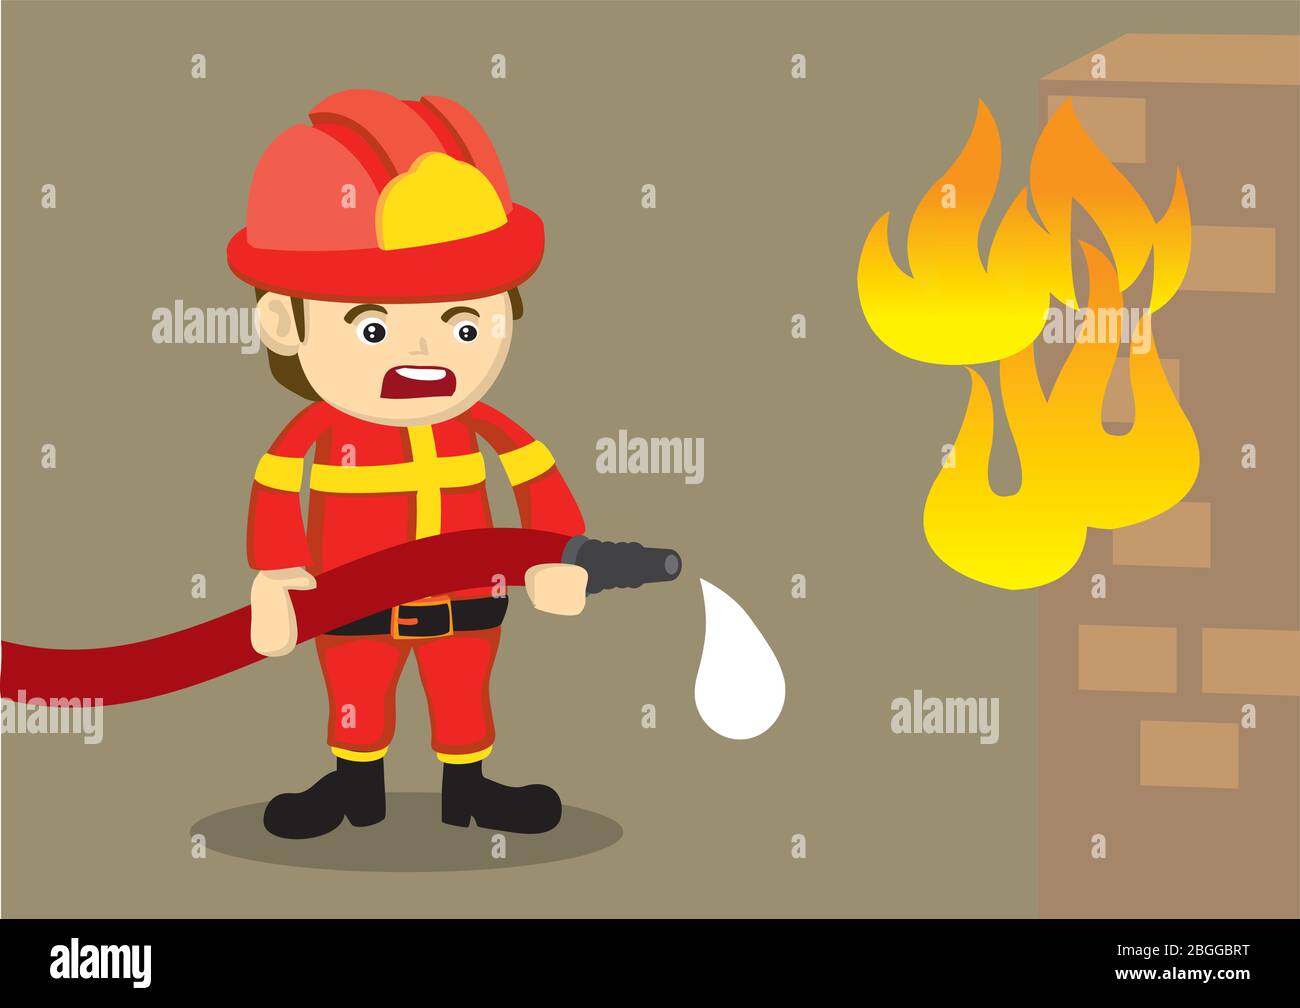 Illustration de la jolie caricature vectorielle d'un pompier en difficulté en uniforme rouge tenant un tuyau d'eau qui coule devant une maison en brique au feu. Illustration de Vecteur